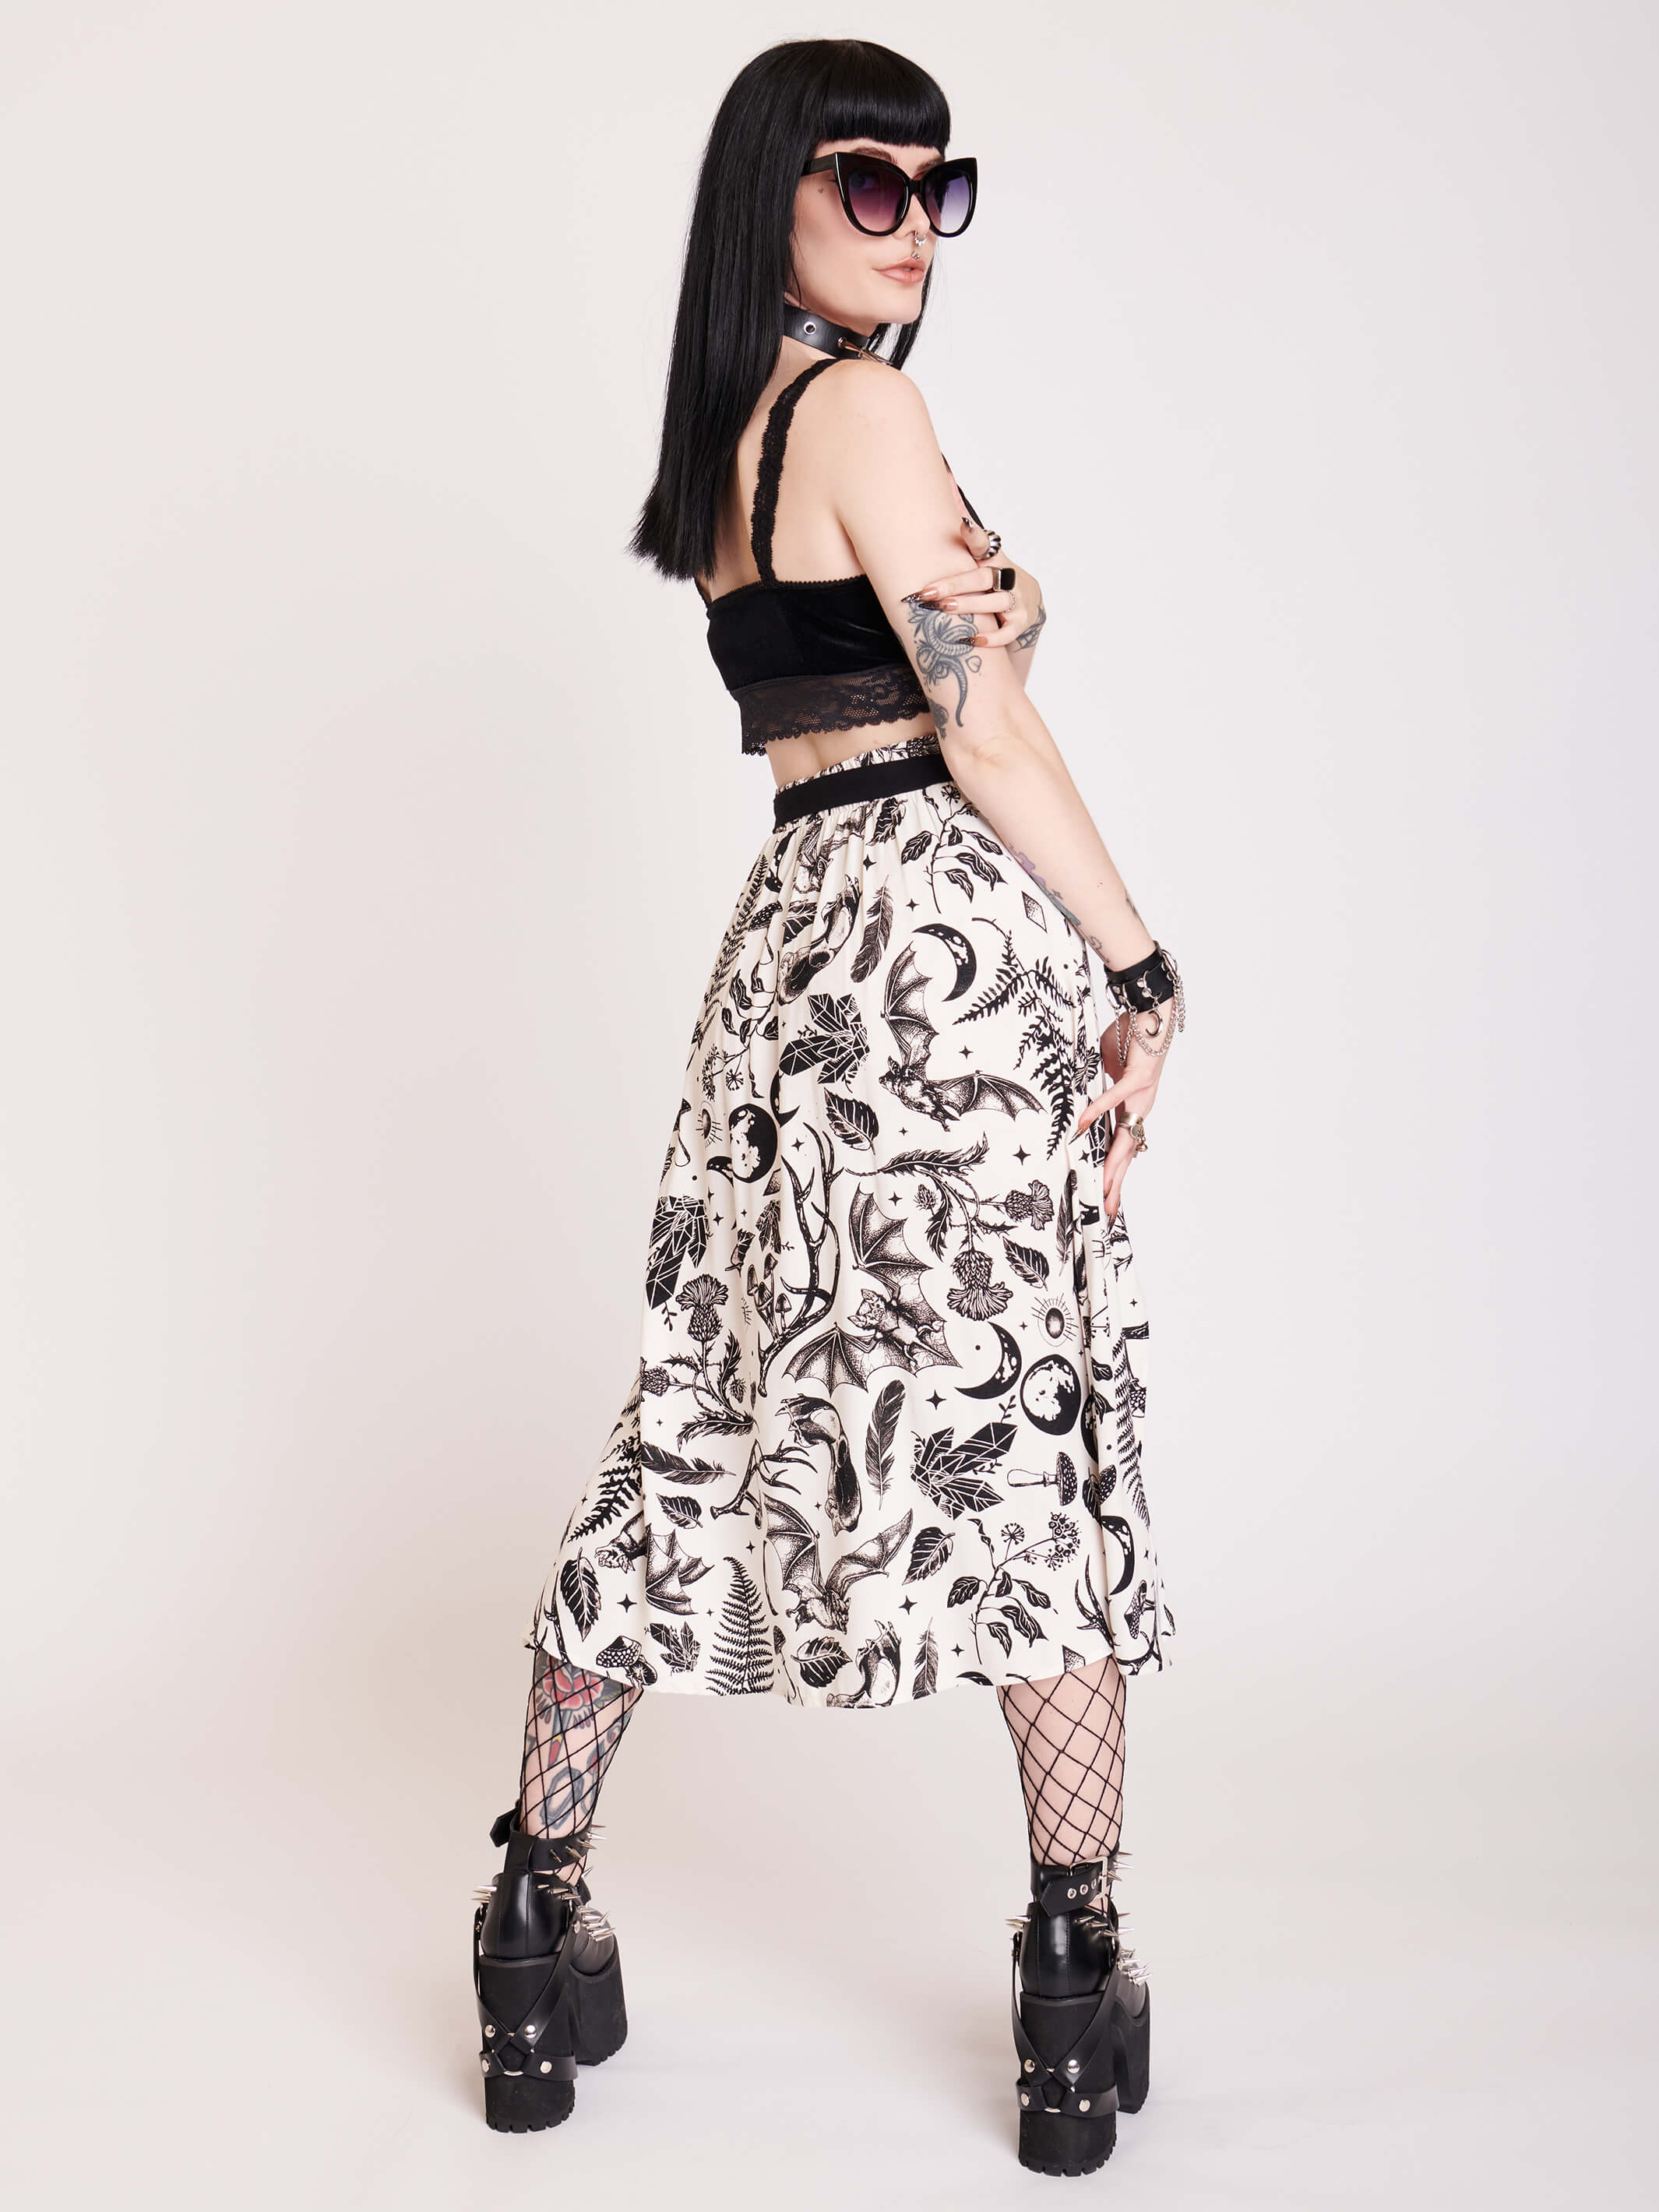 White split midi skirt with black all over pattern